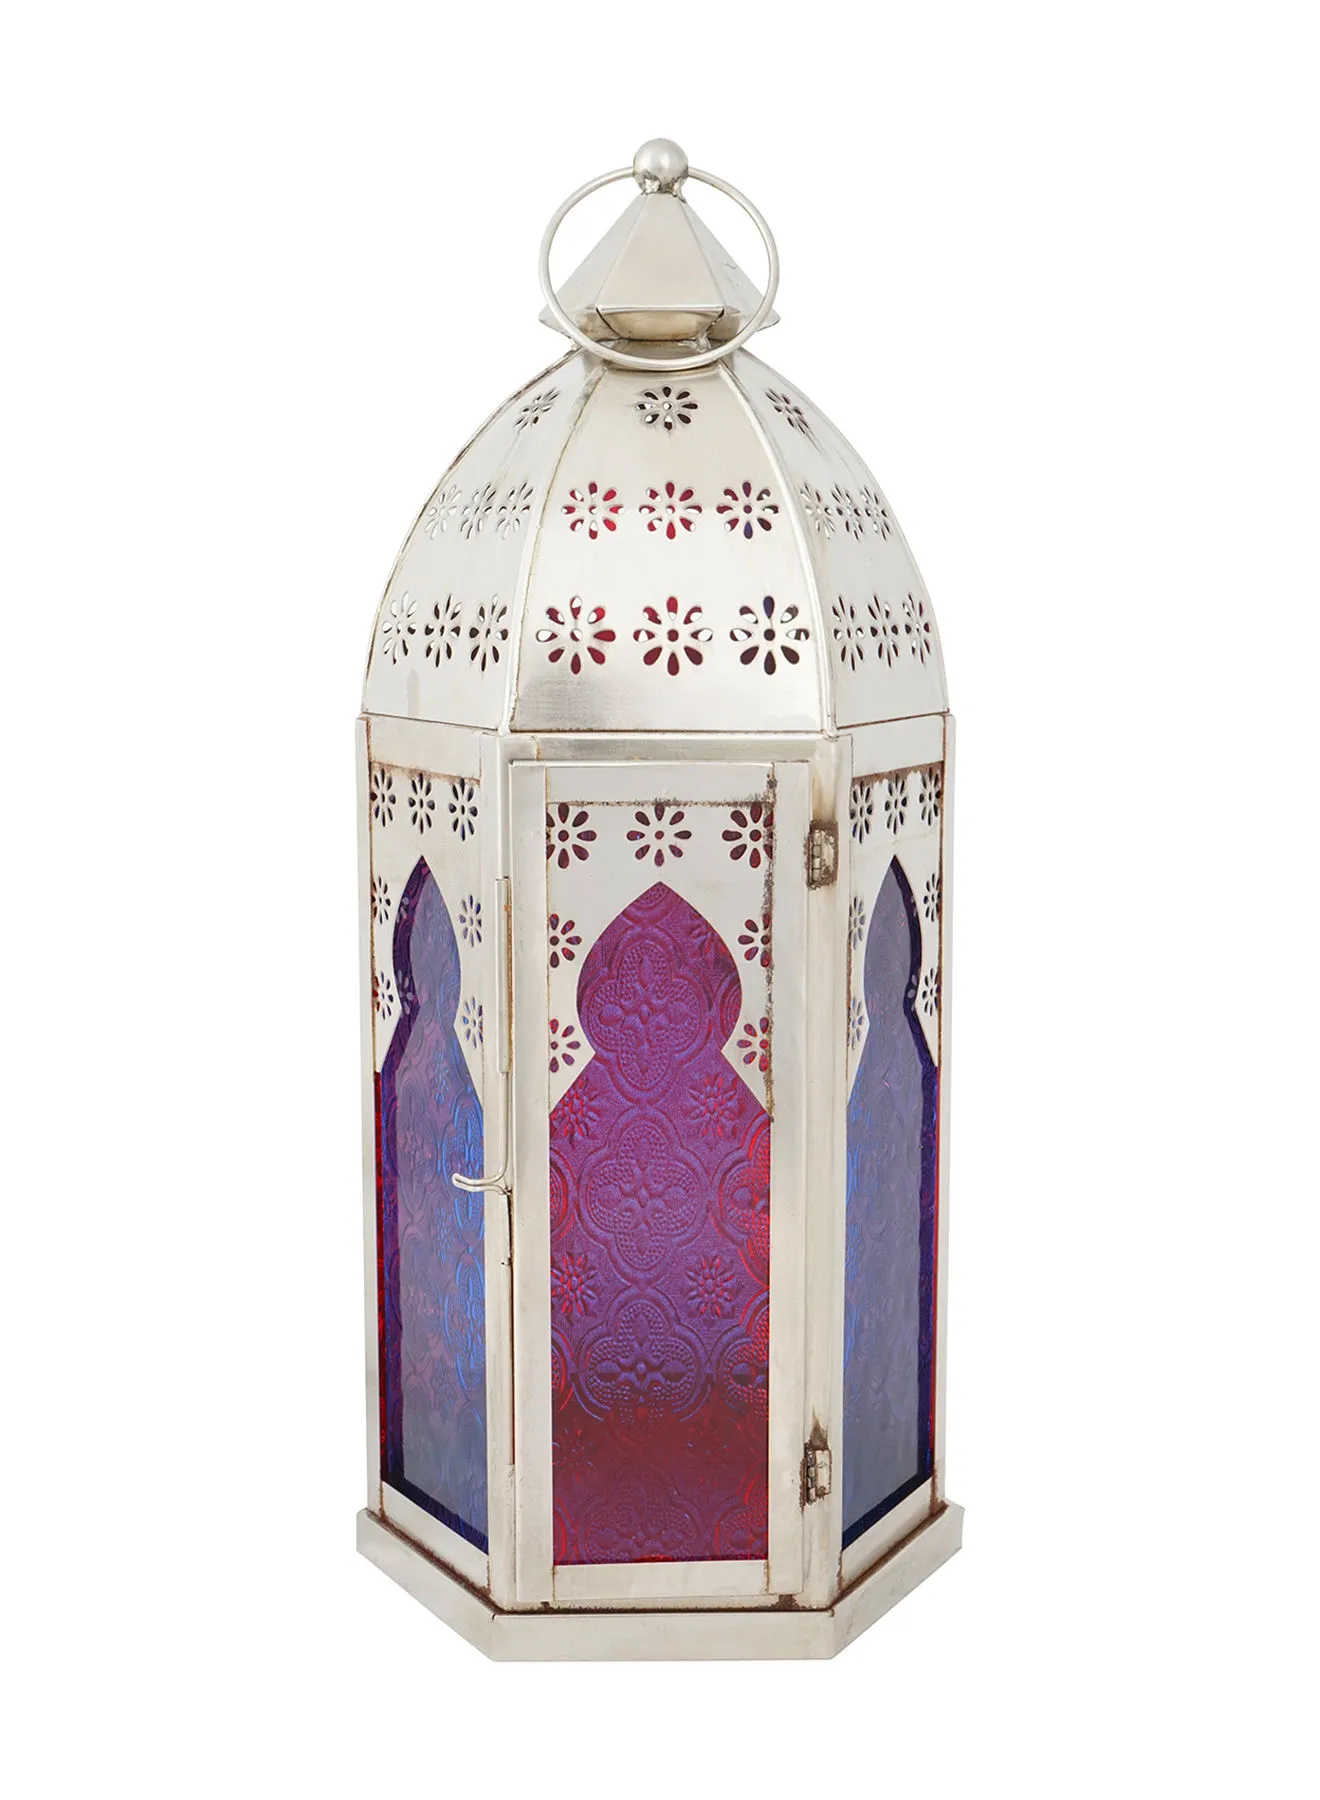 Ebb & Flow فانوس شمع رمضان الحديث مع زجاج برائحة فريدة وفاخرة الجودة لمنزل أنيق ومثالي فضي 18 x 18 x 40cm